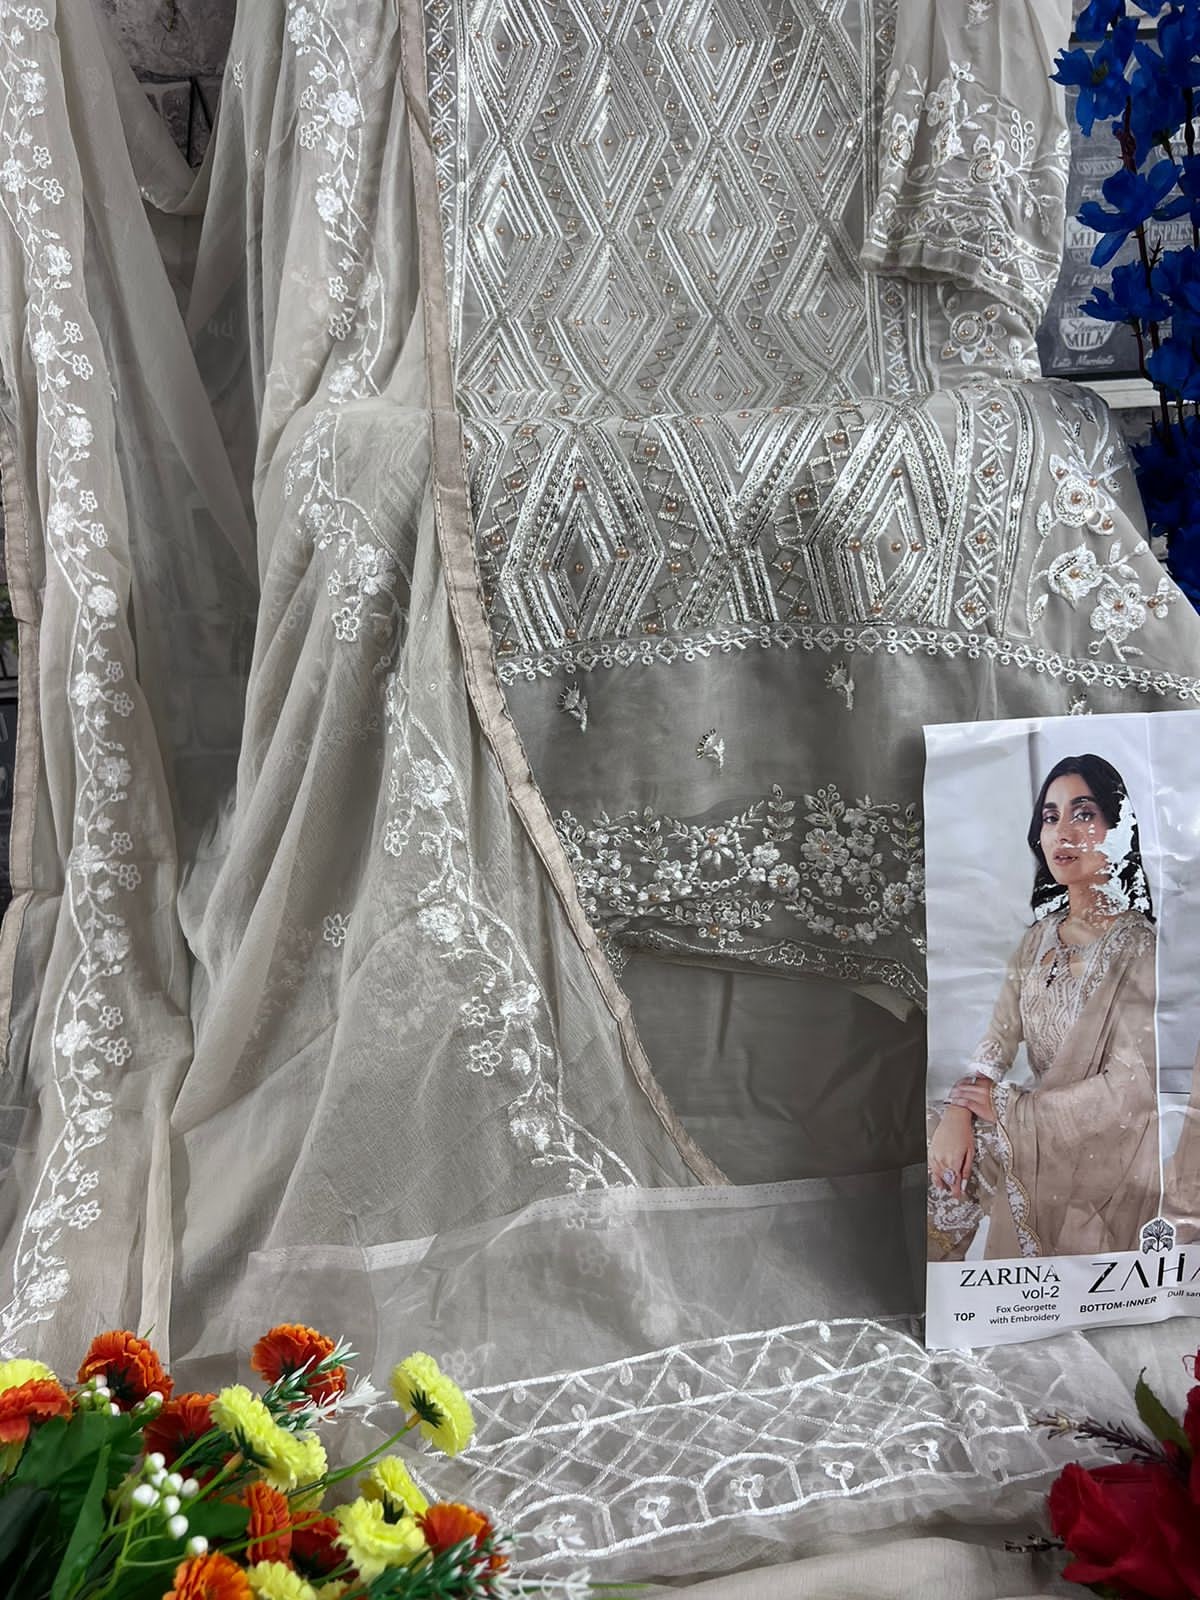 Zarina Vol 2 Dn 10104 Zaha Georgette Pakistani Salwar Suits